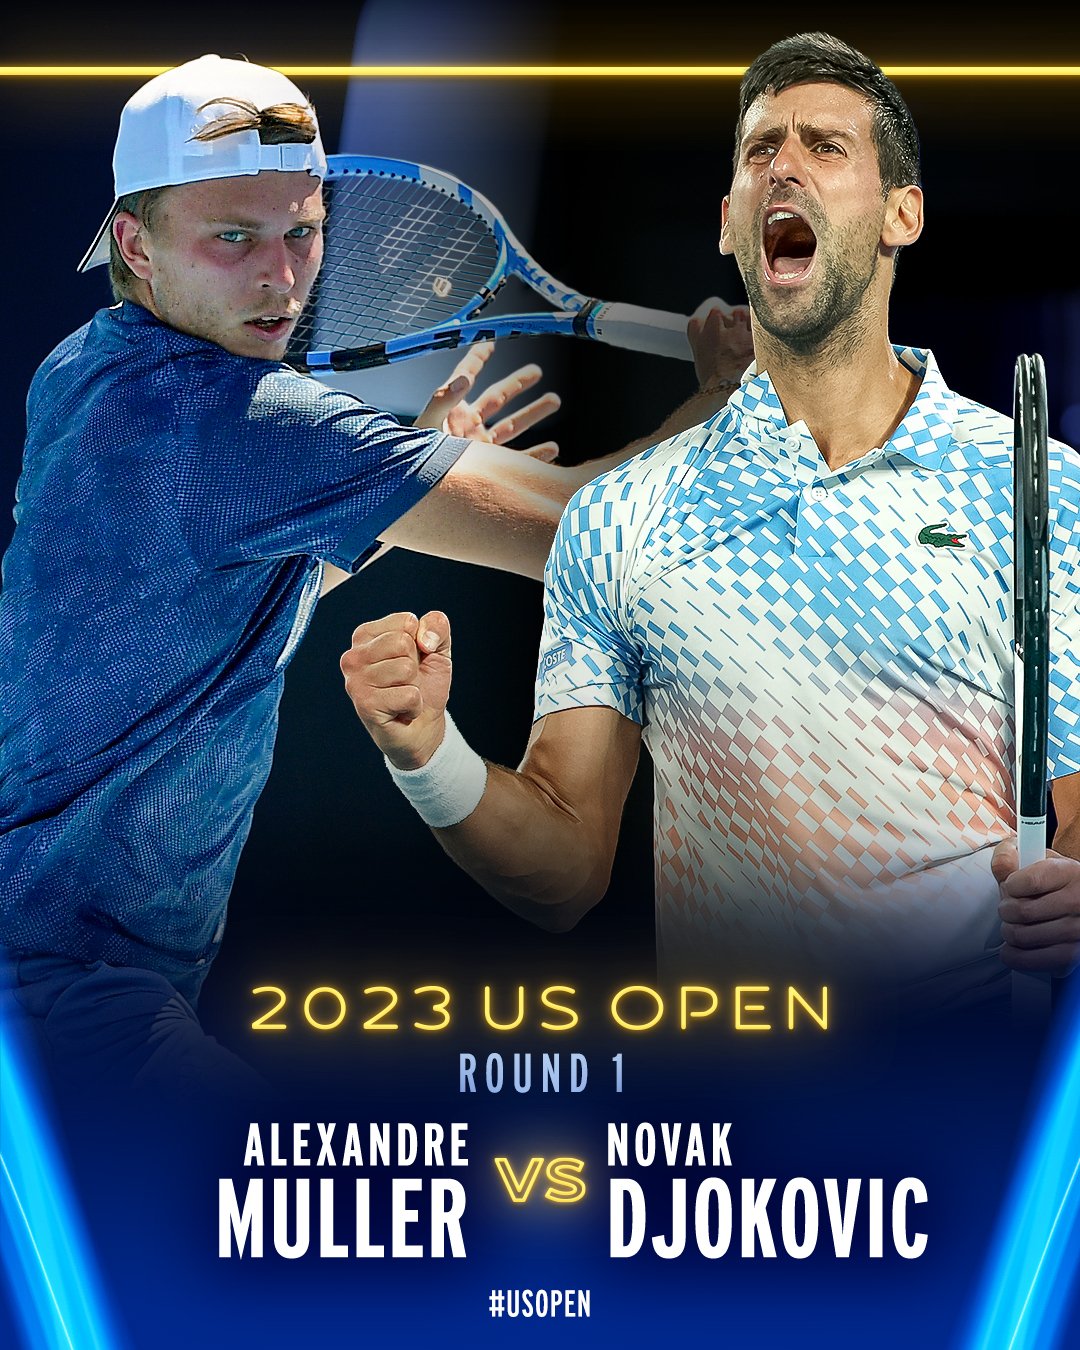 Novak Djokovic vs Alexandre Muller in Round 1. 